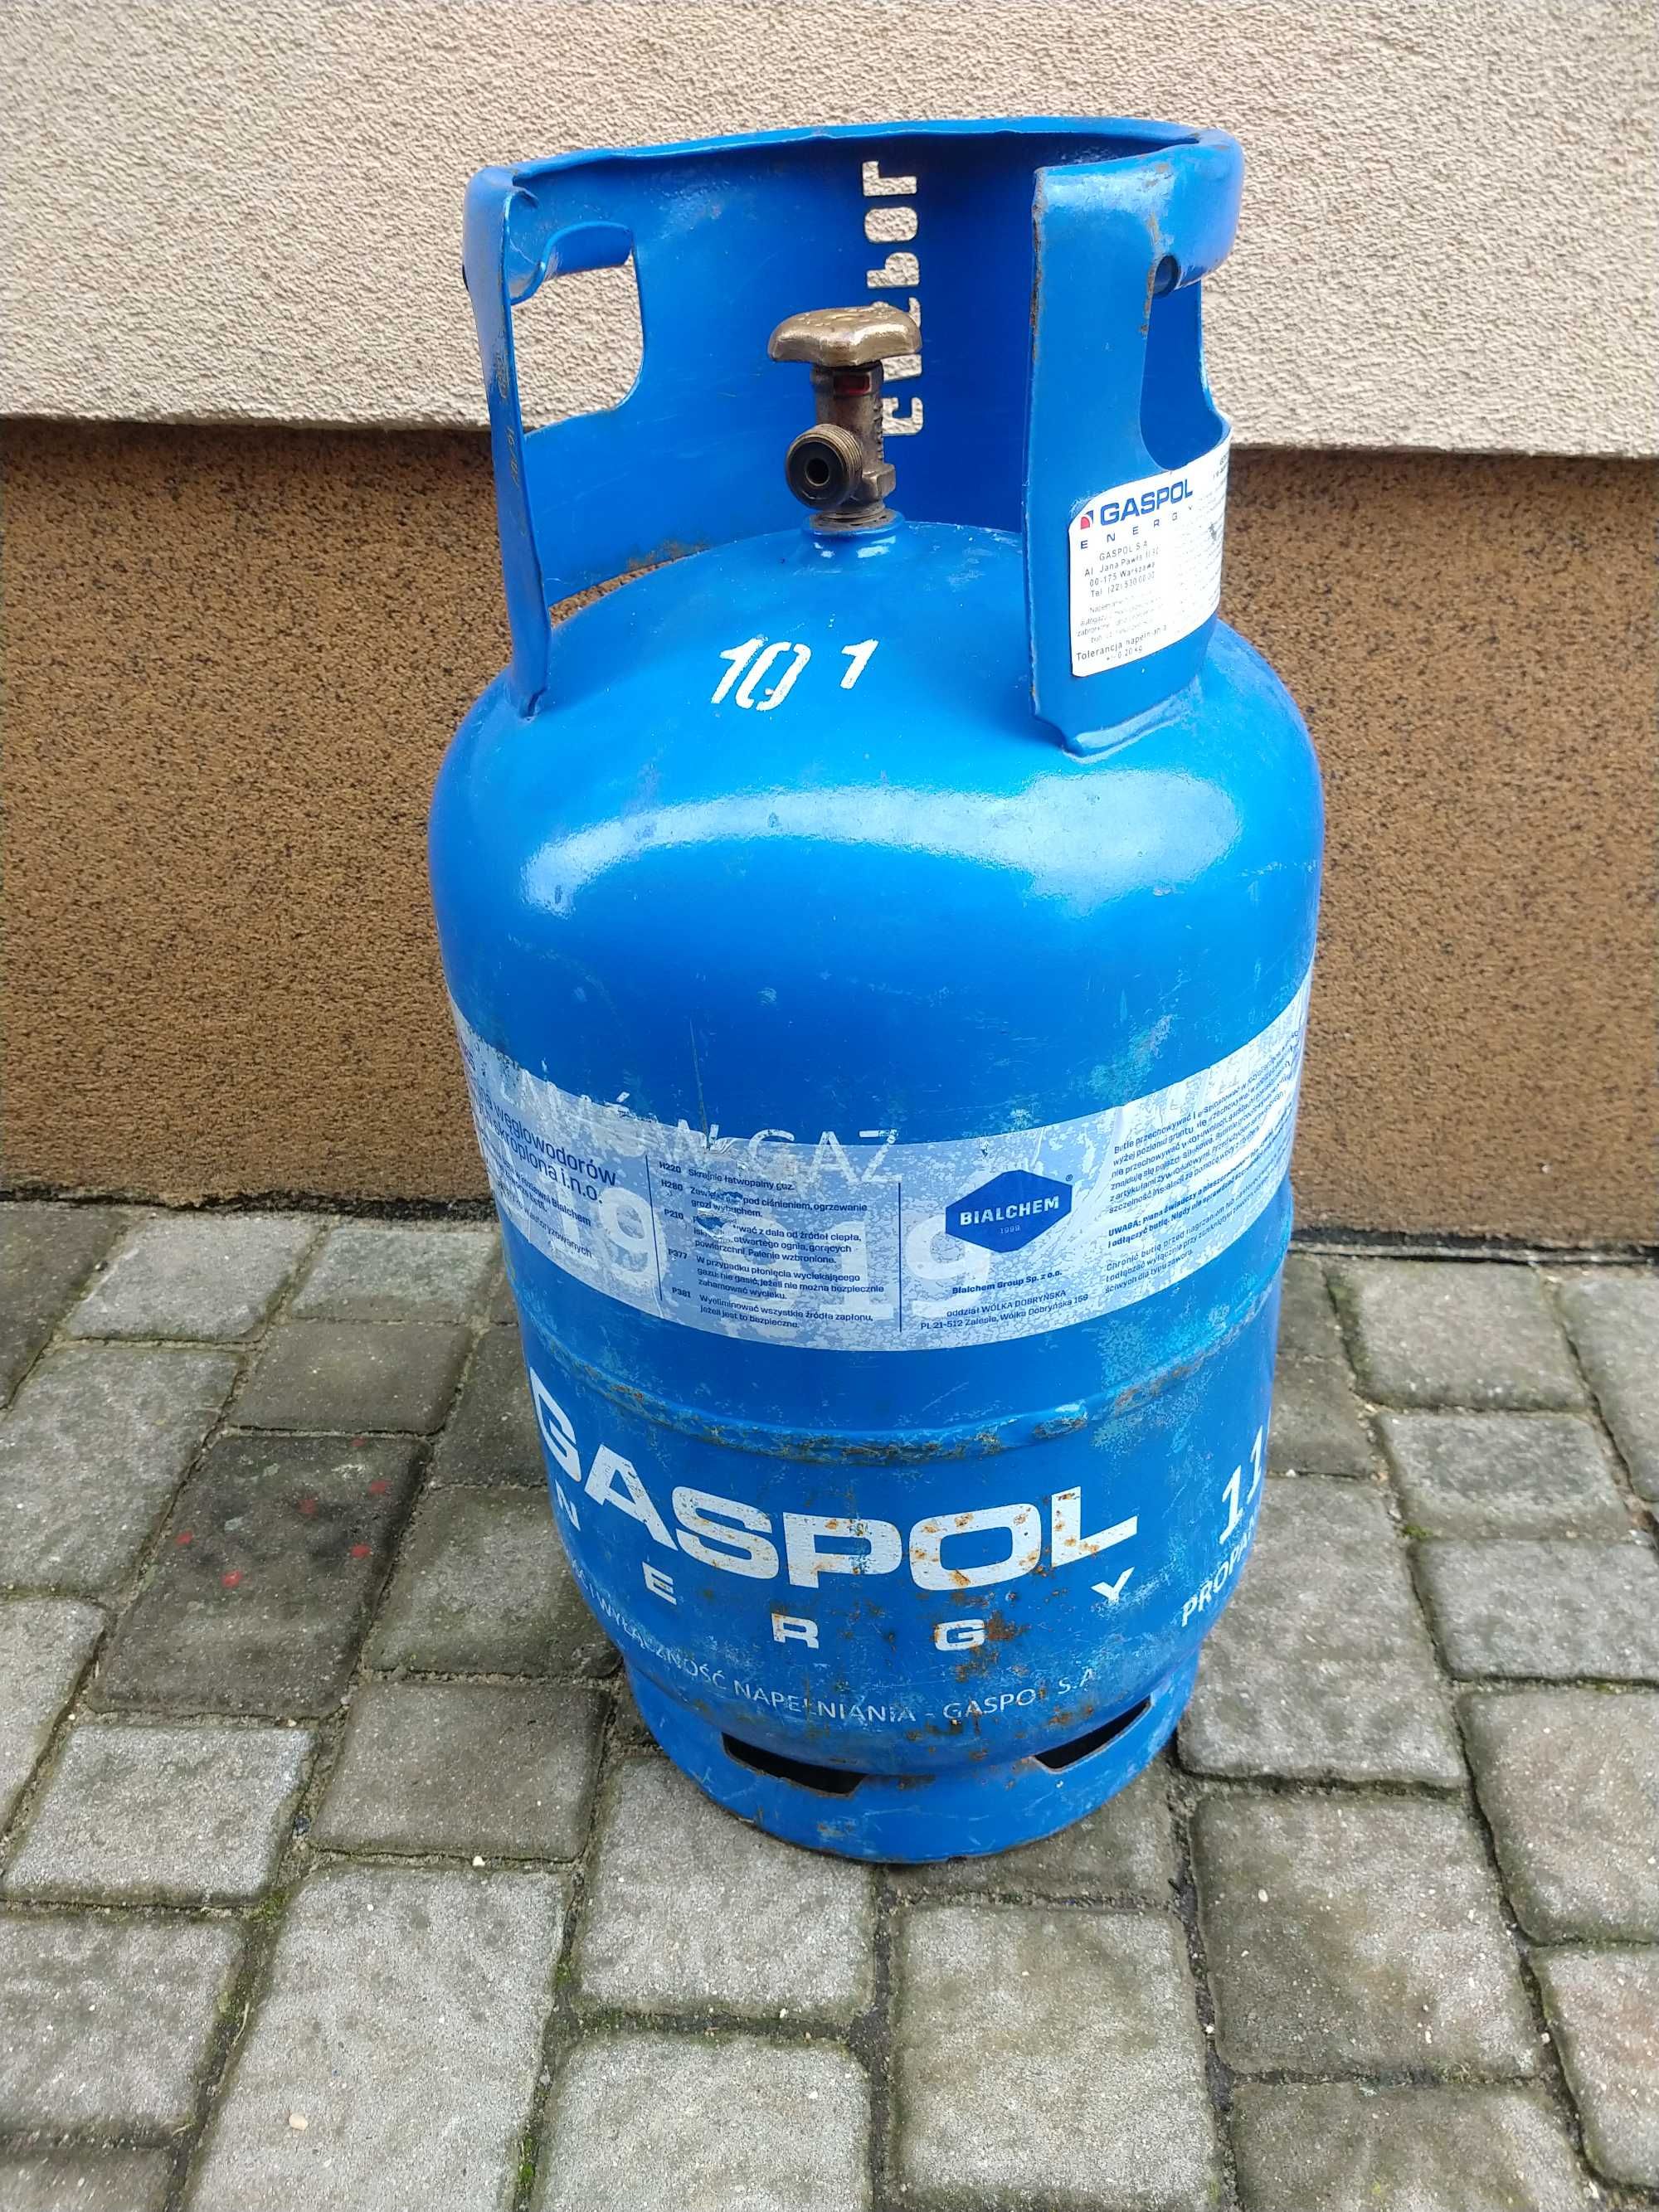 Sprzedam butla gazowa 11 kg propan-butan z legalizacją Lubartów • OLX.pl